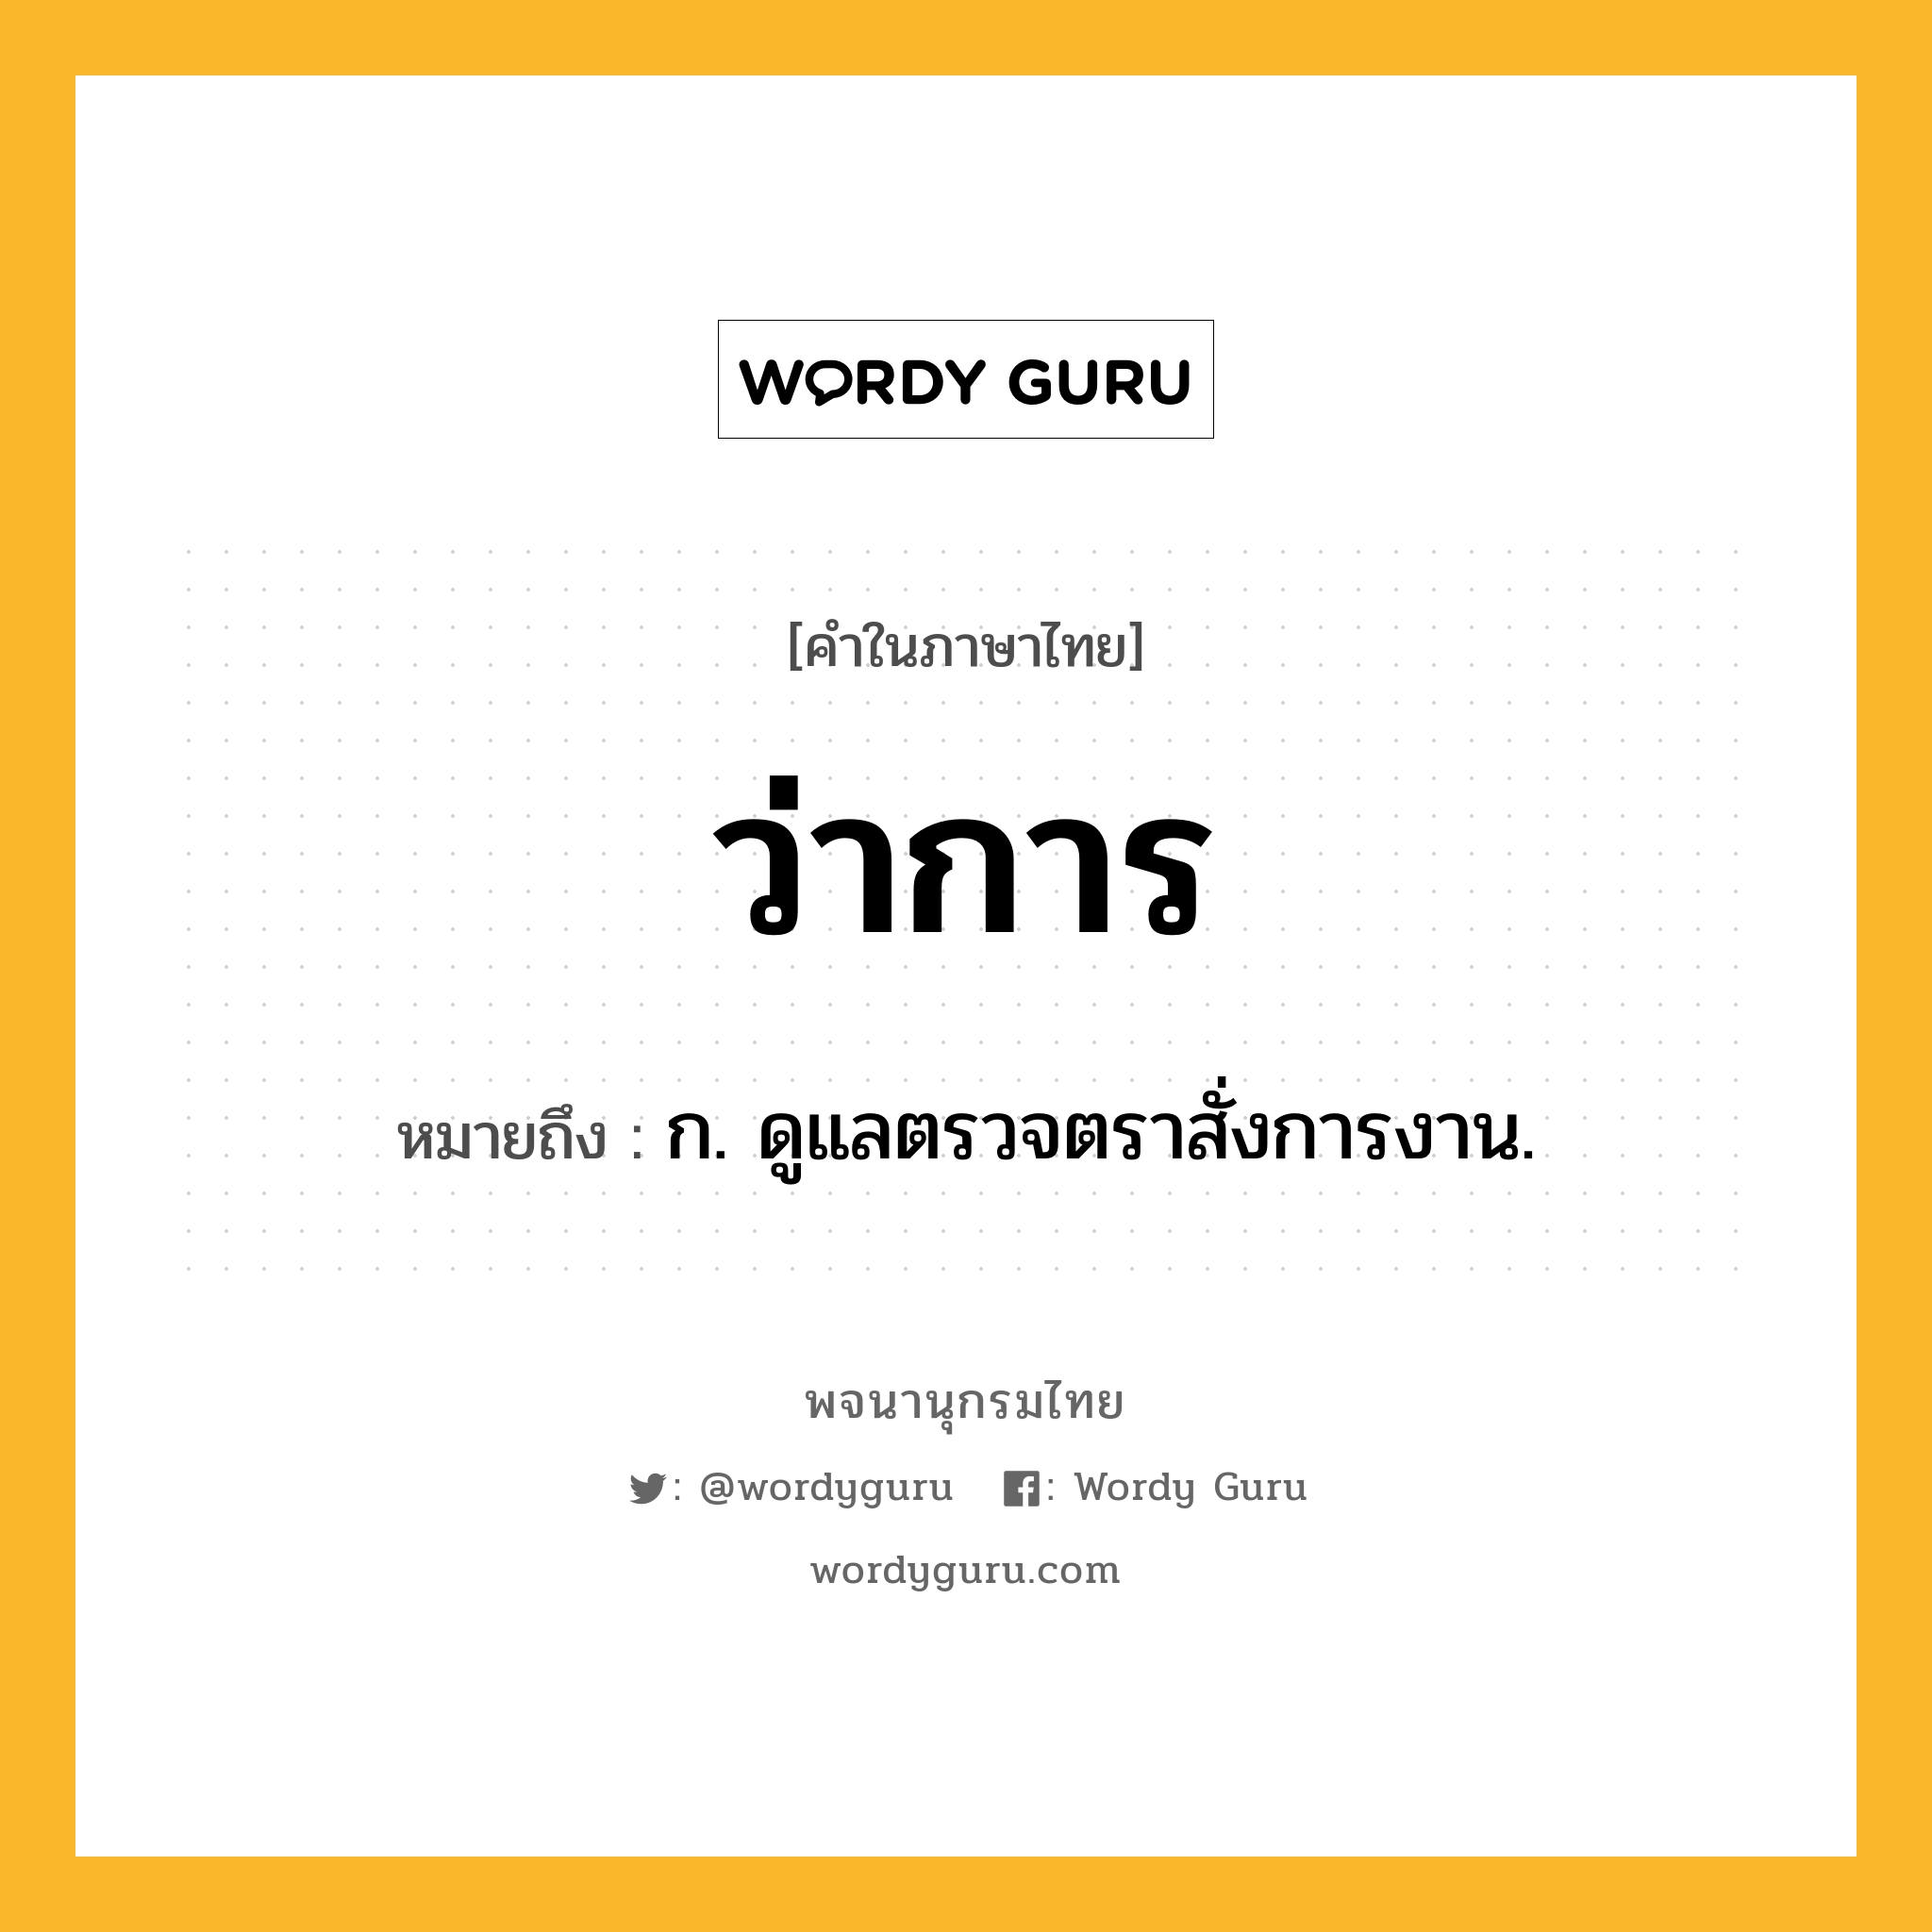 ว่าการ หมายถึงอะไร?, คำในภาษาไทย ว่าการ หมายถึง ก. ดูแลตรวจตราสั่งการงาน.